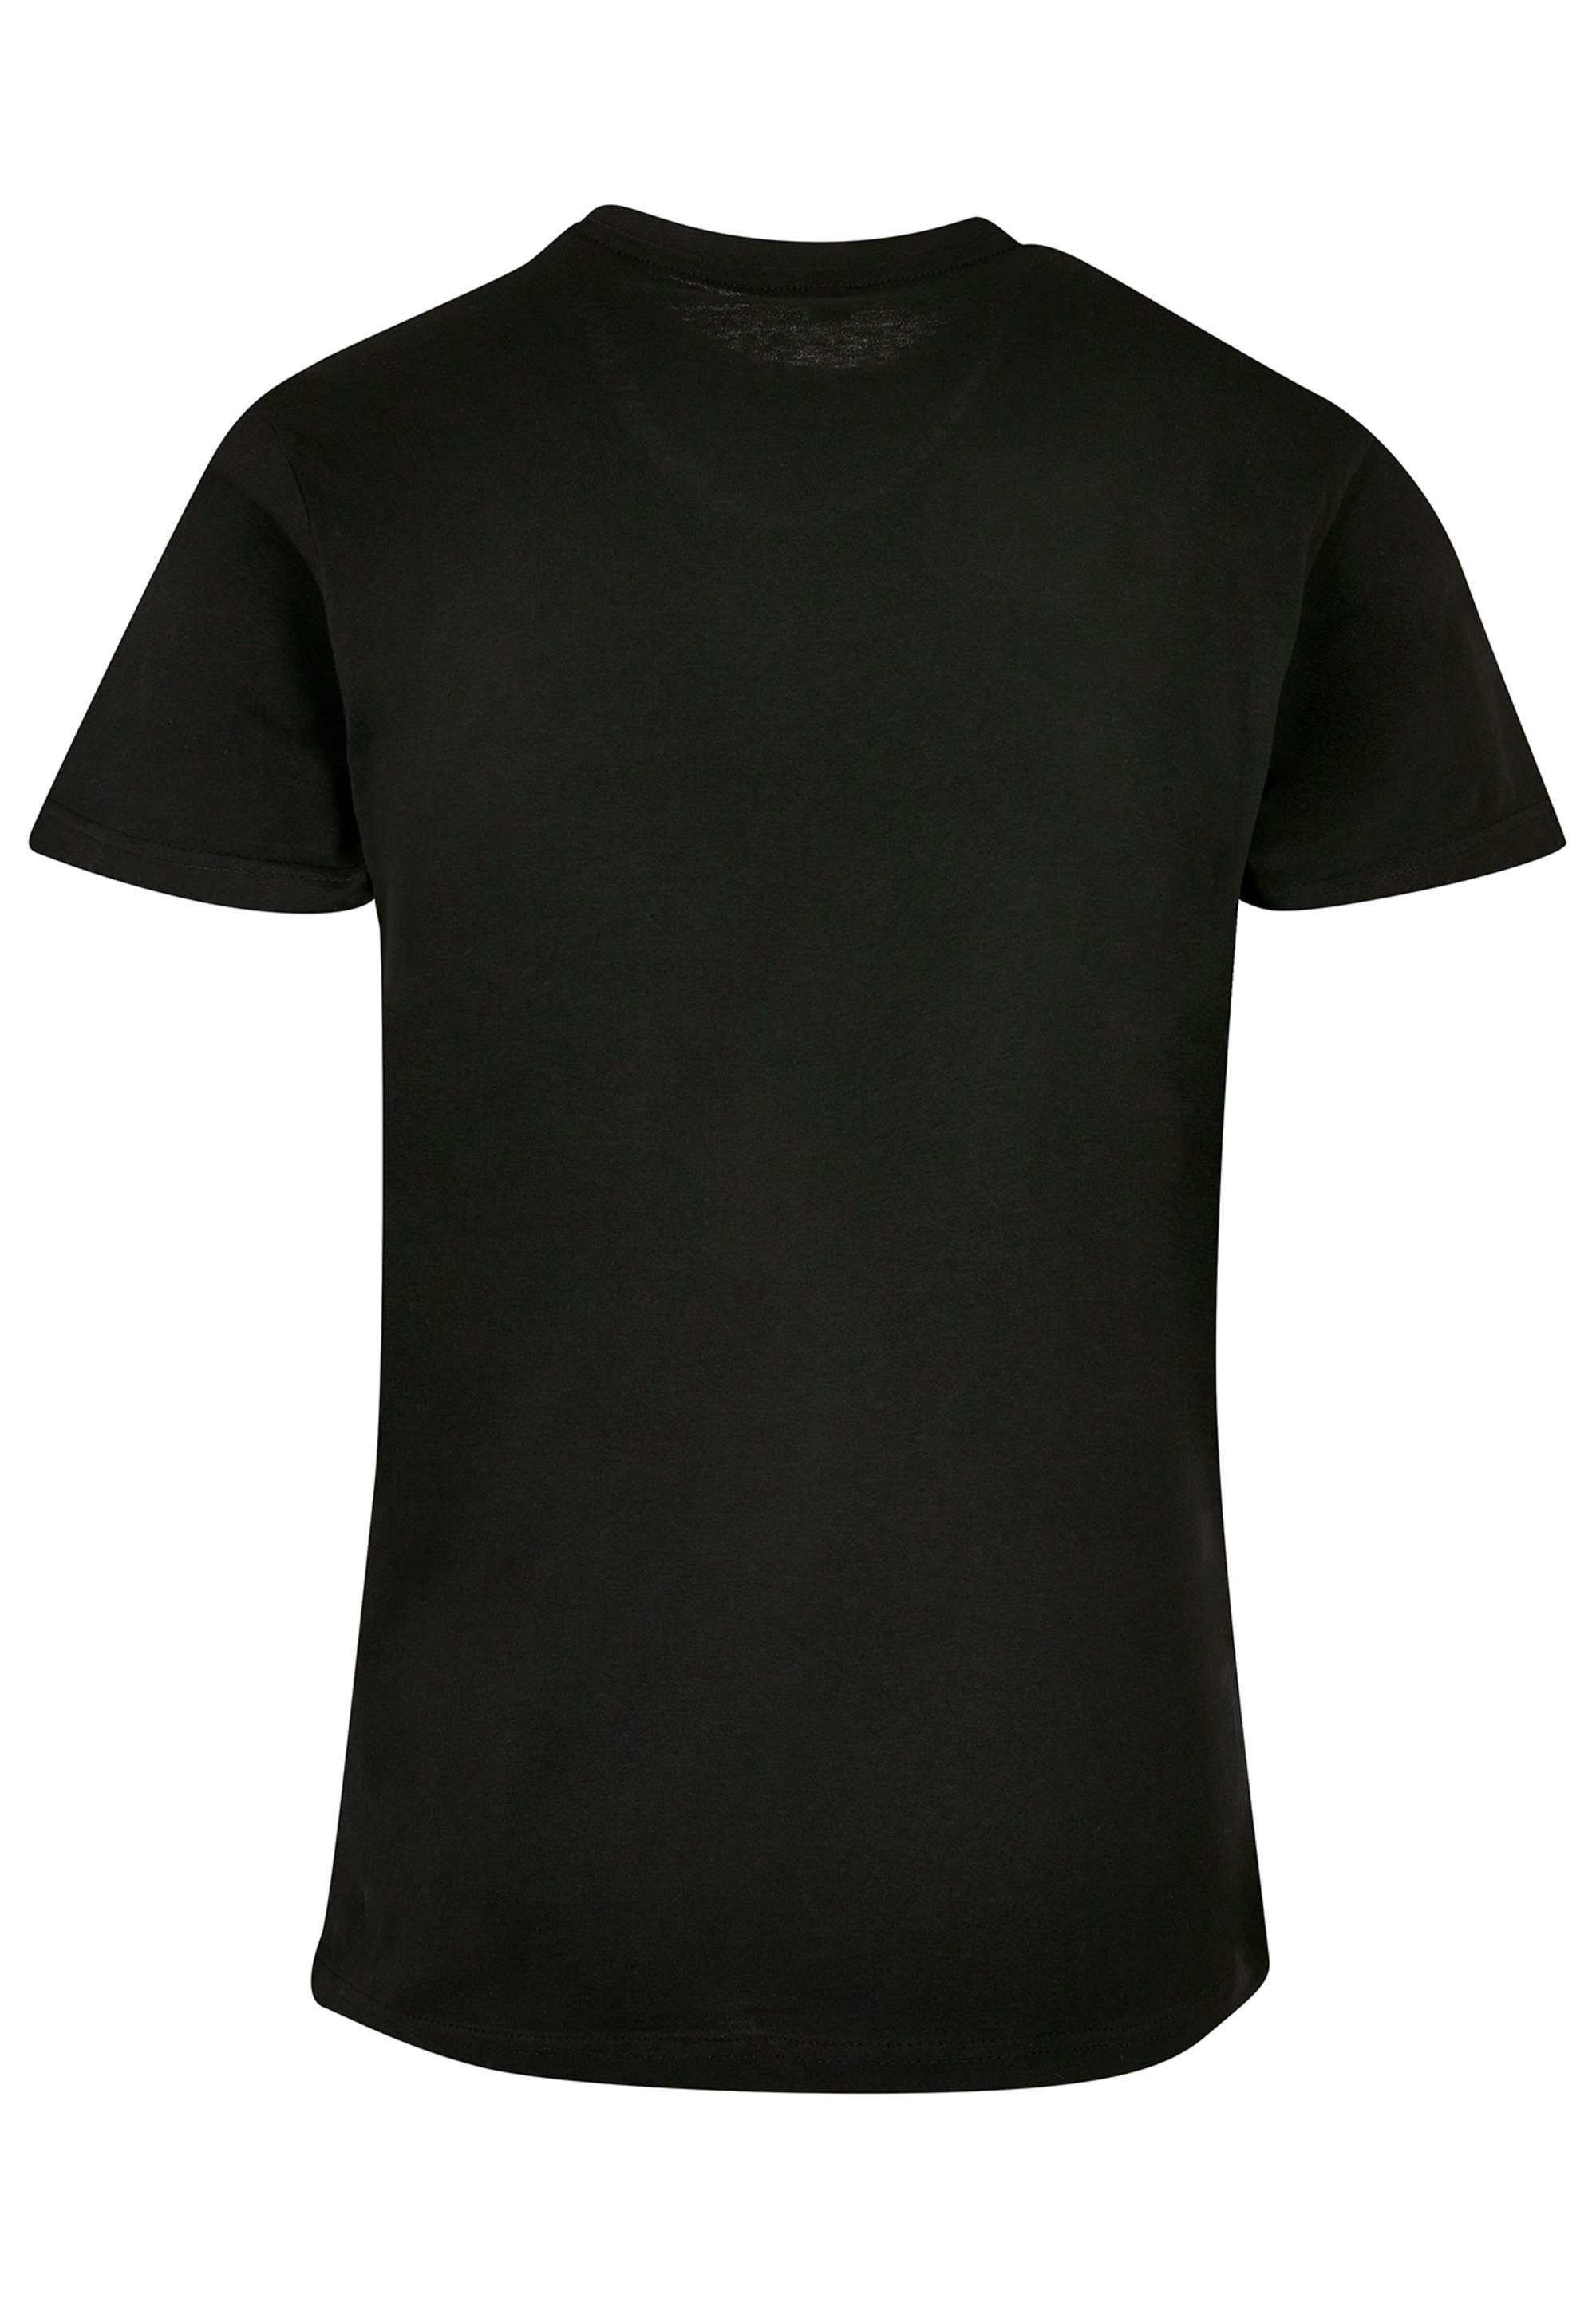 F4NT4STIC T-Shirt Schmetterling Silhouette TEE UNISEX Print, Sehr weicher  Baumwollstoff mit hohem Tragekomfort